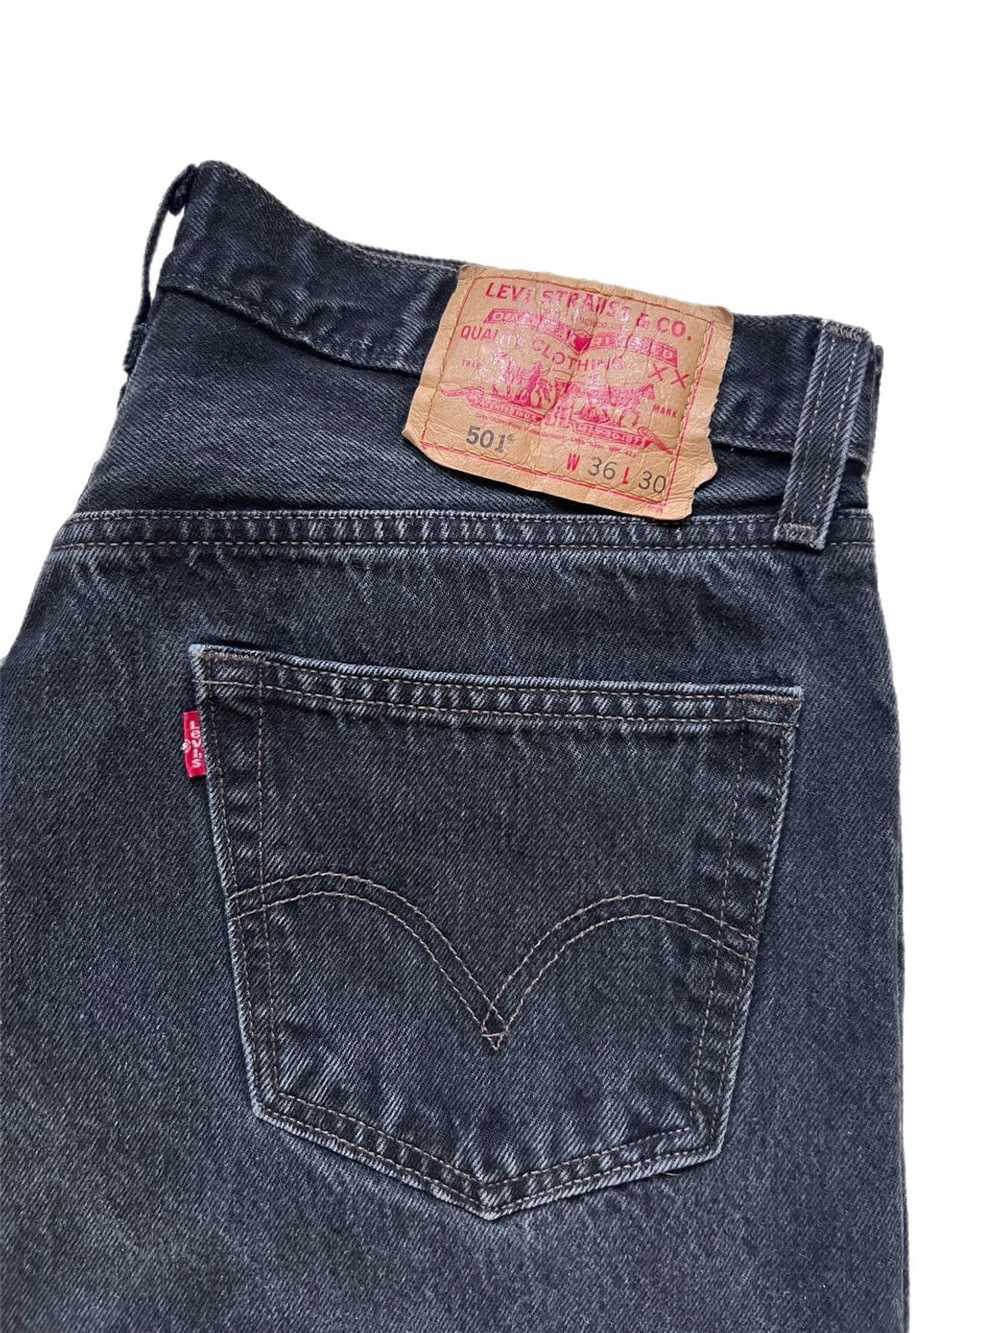 Levi's × Vintage Vintage 501 Black Denim Jeans - image 2